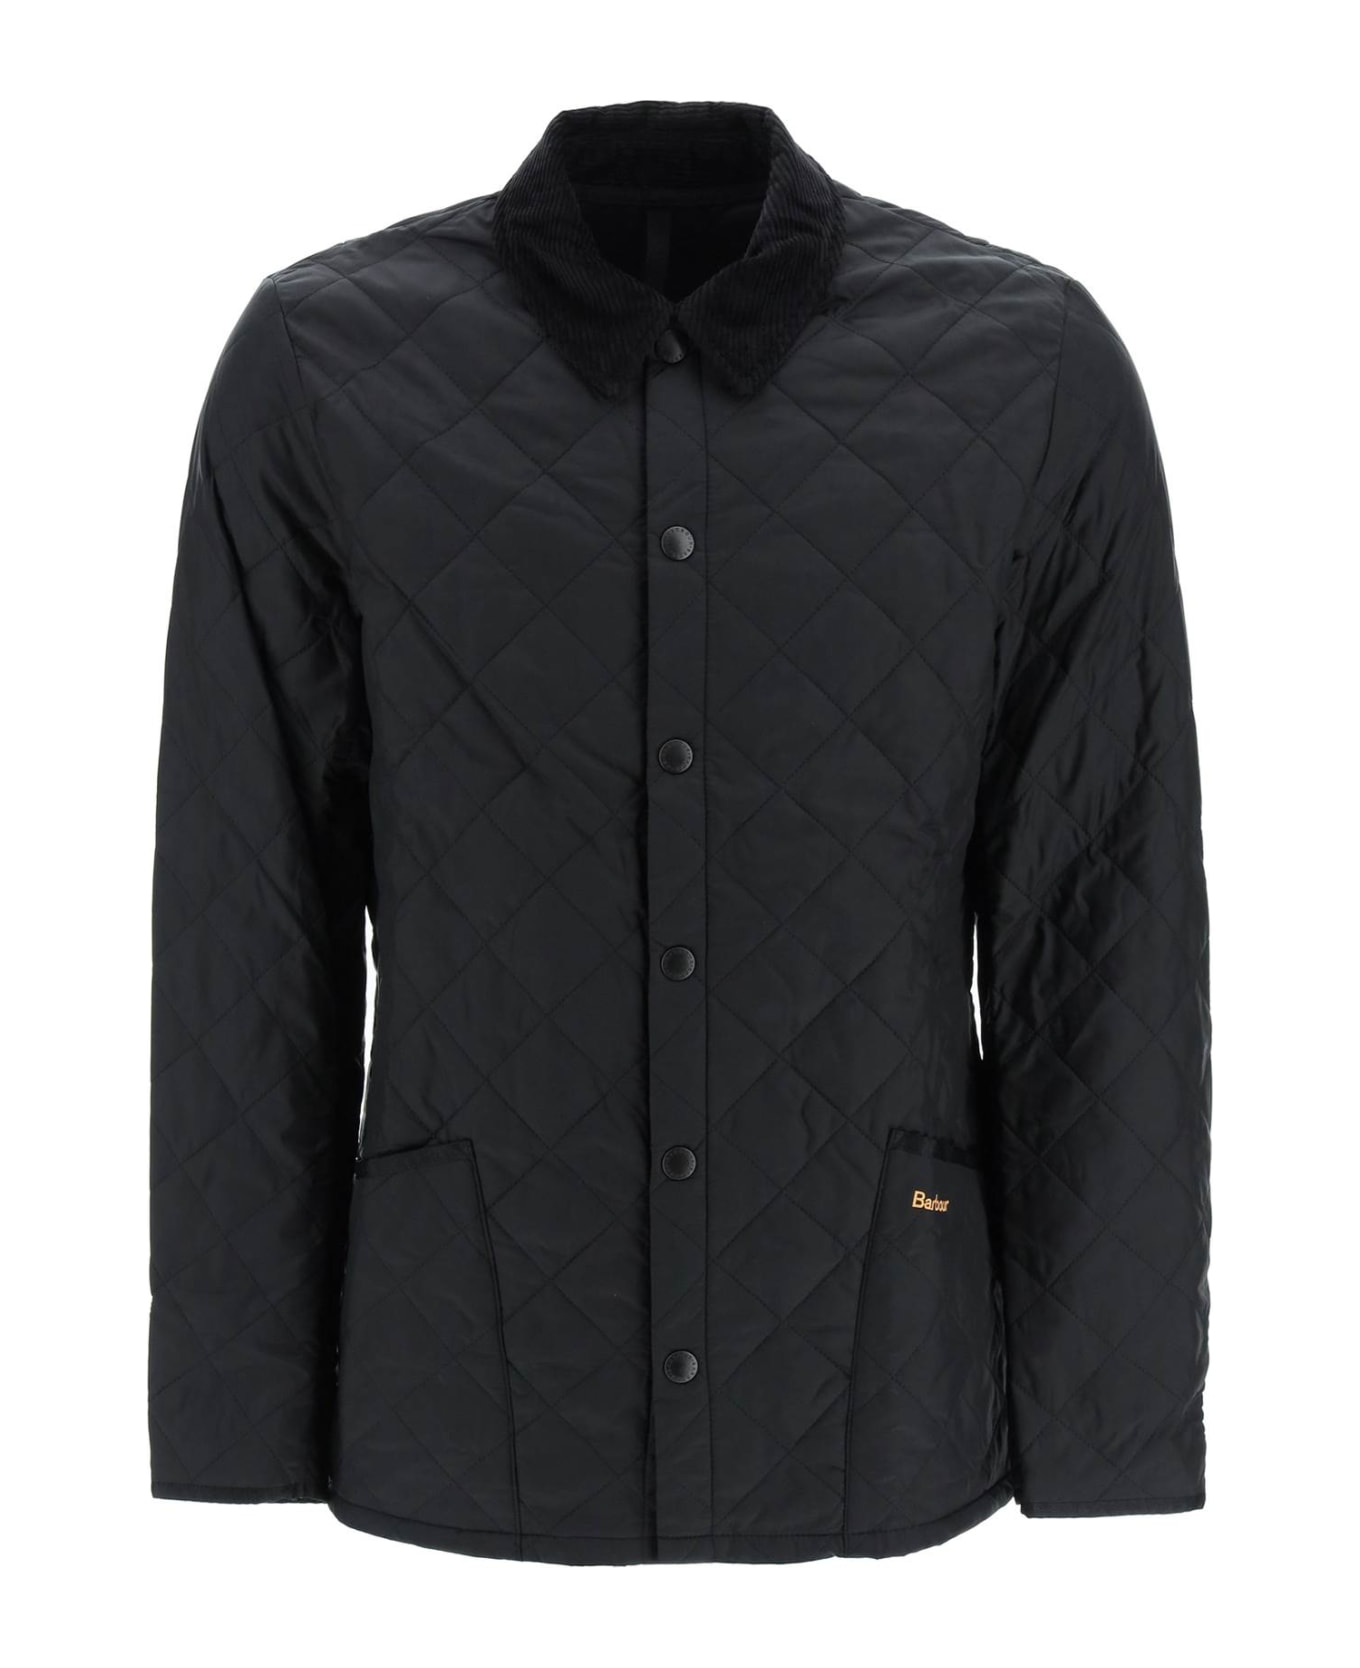 Barbour Liddesdale Quilted Jacket - Black ジャケット